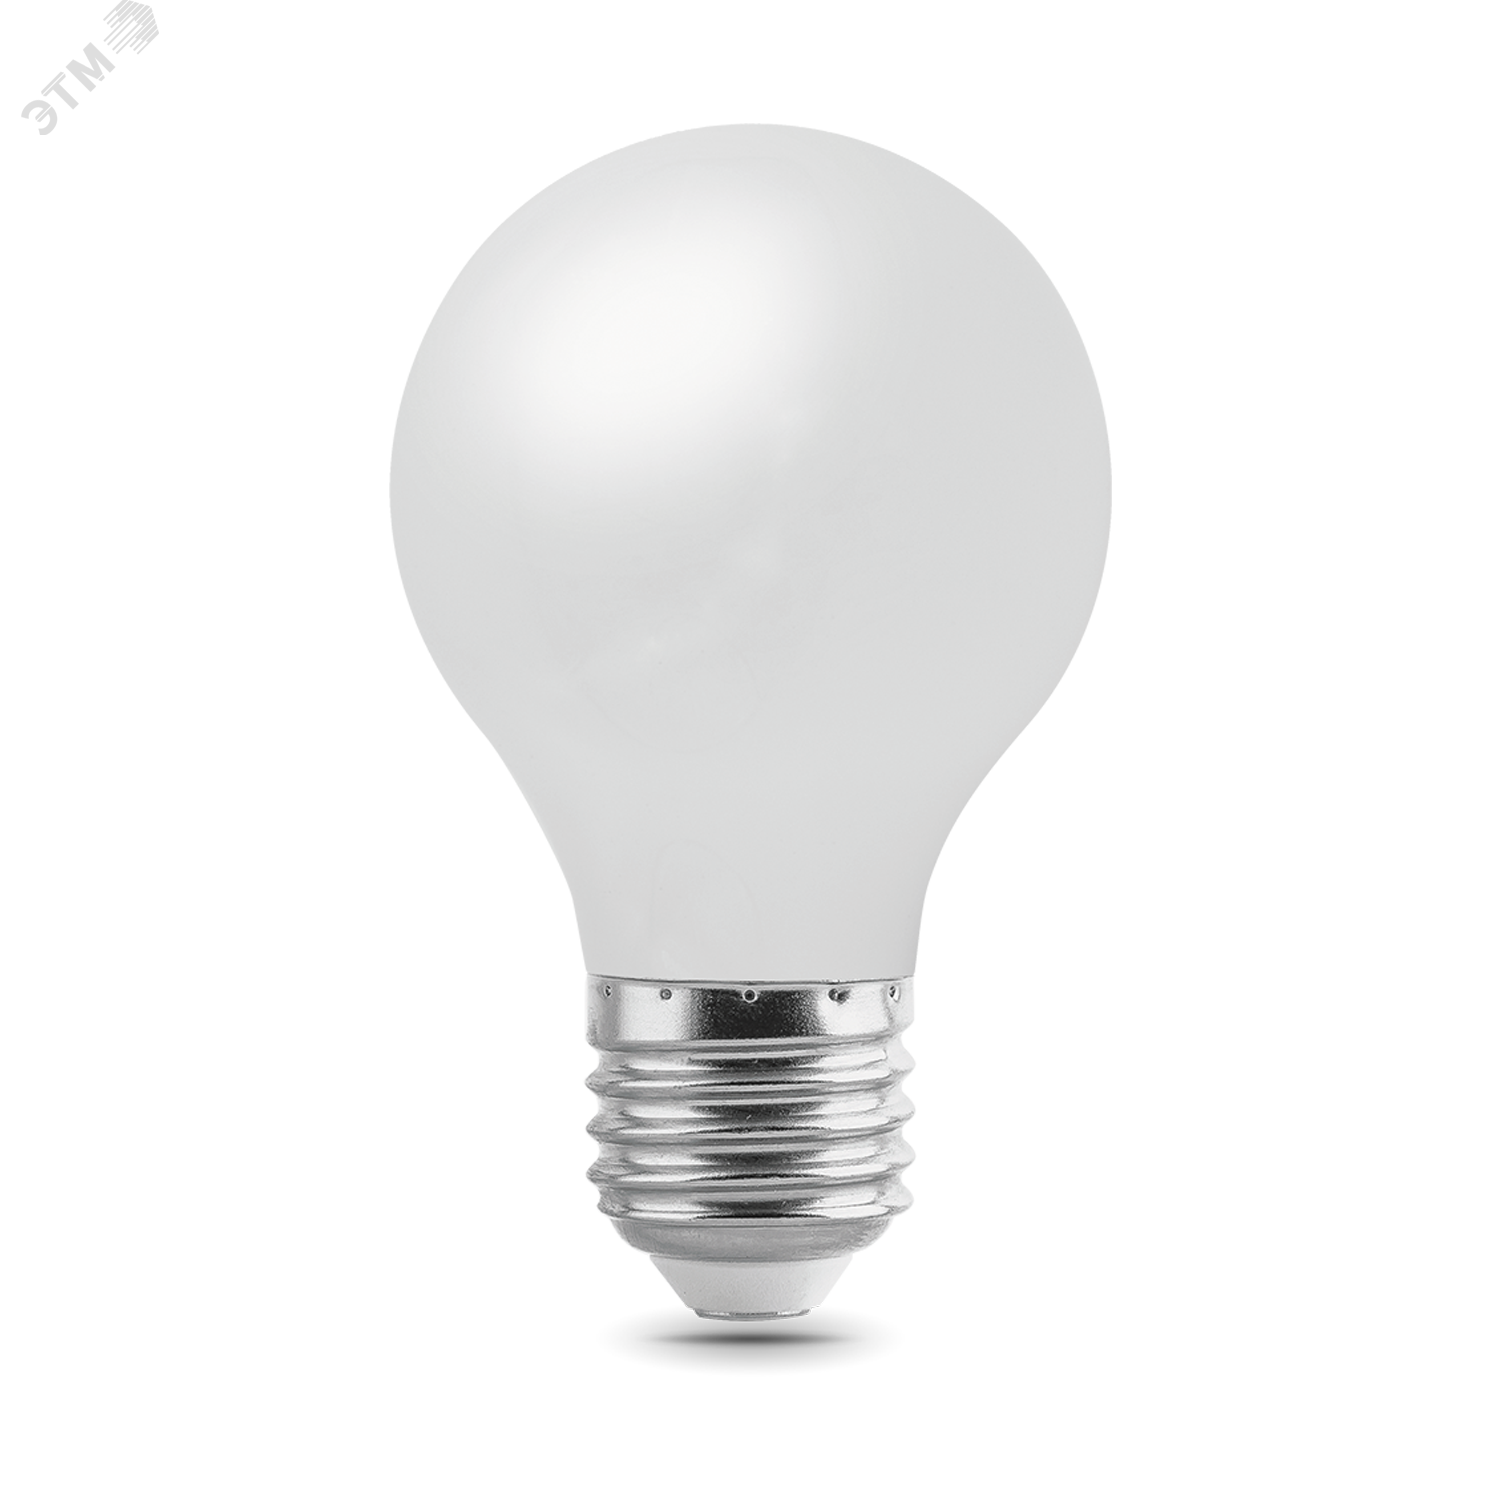 Лампа светодиодная филаментная LED 10 Вт 820 лм 2700К AC185-265В E27 А60 (груша) теплая матовая колба диммируемая Black Filament Gauss 102202110-D GAUSS - превью 2